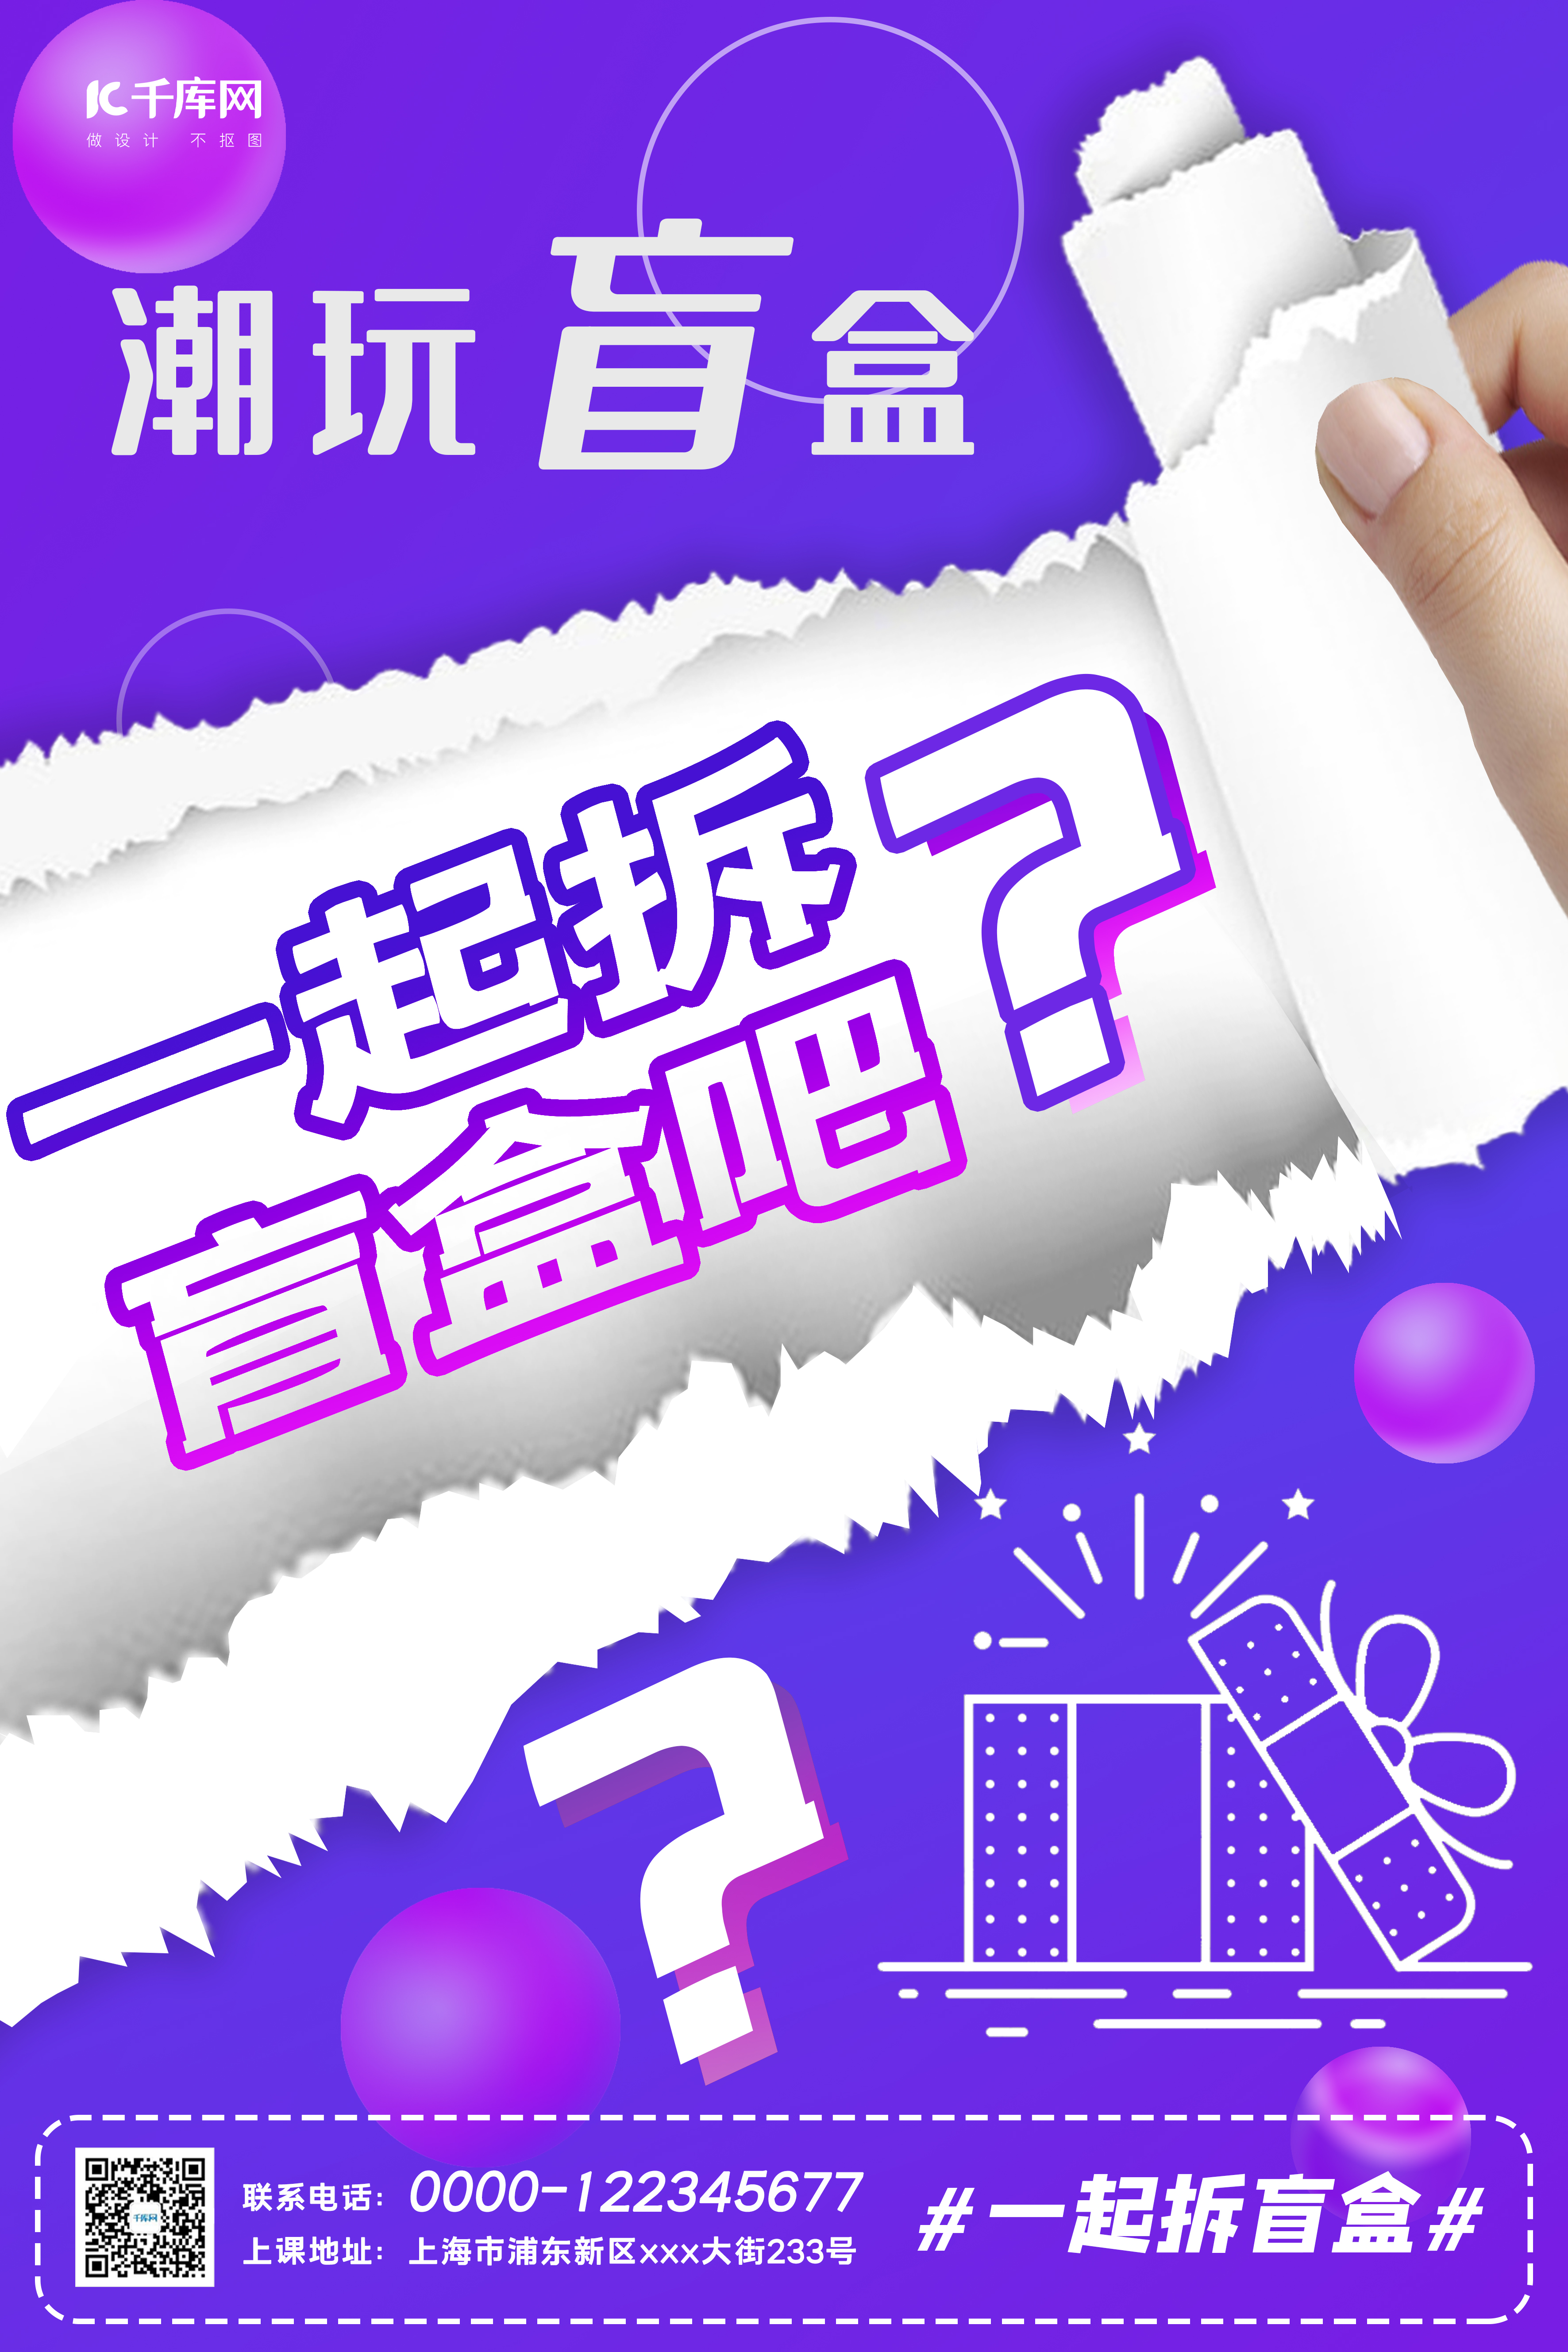 潮玩盲盒活动问号紫色几何风海报图片